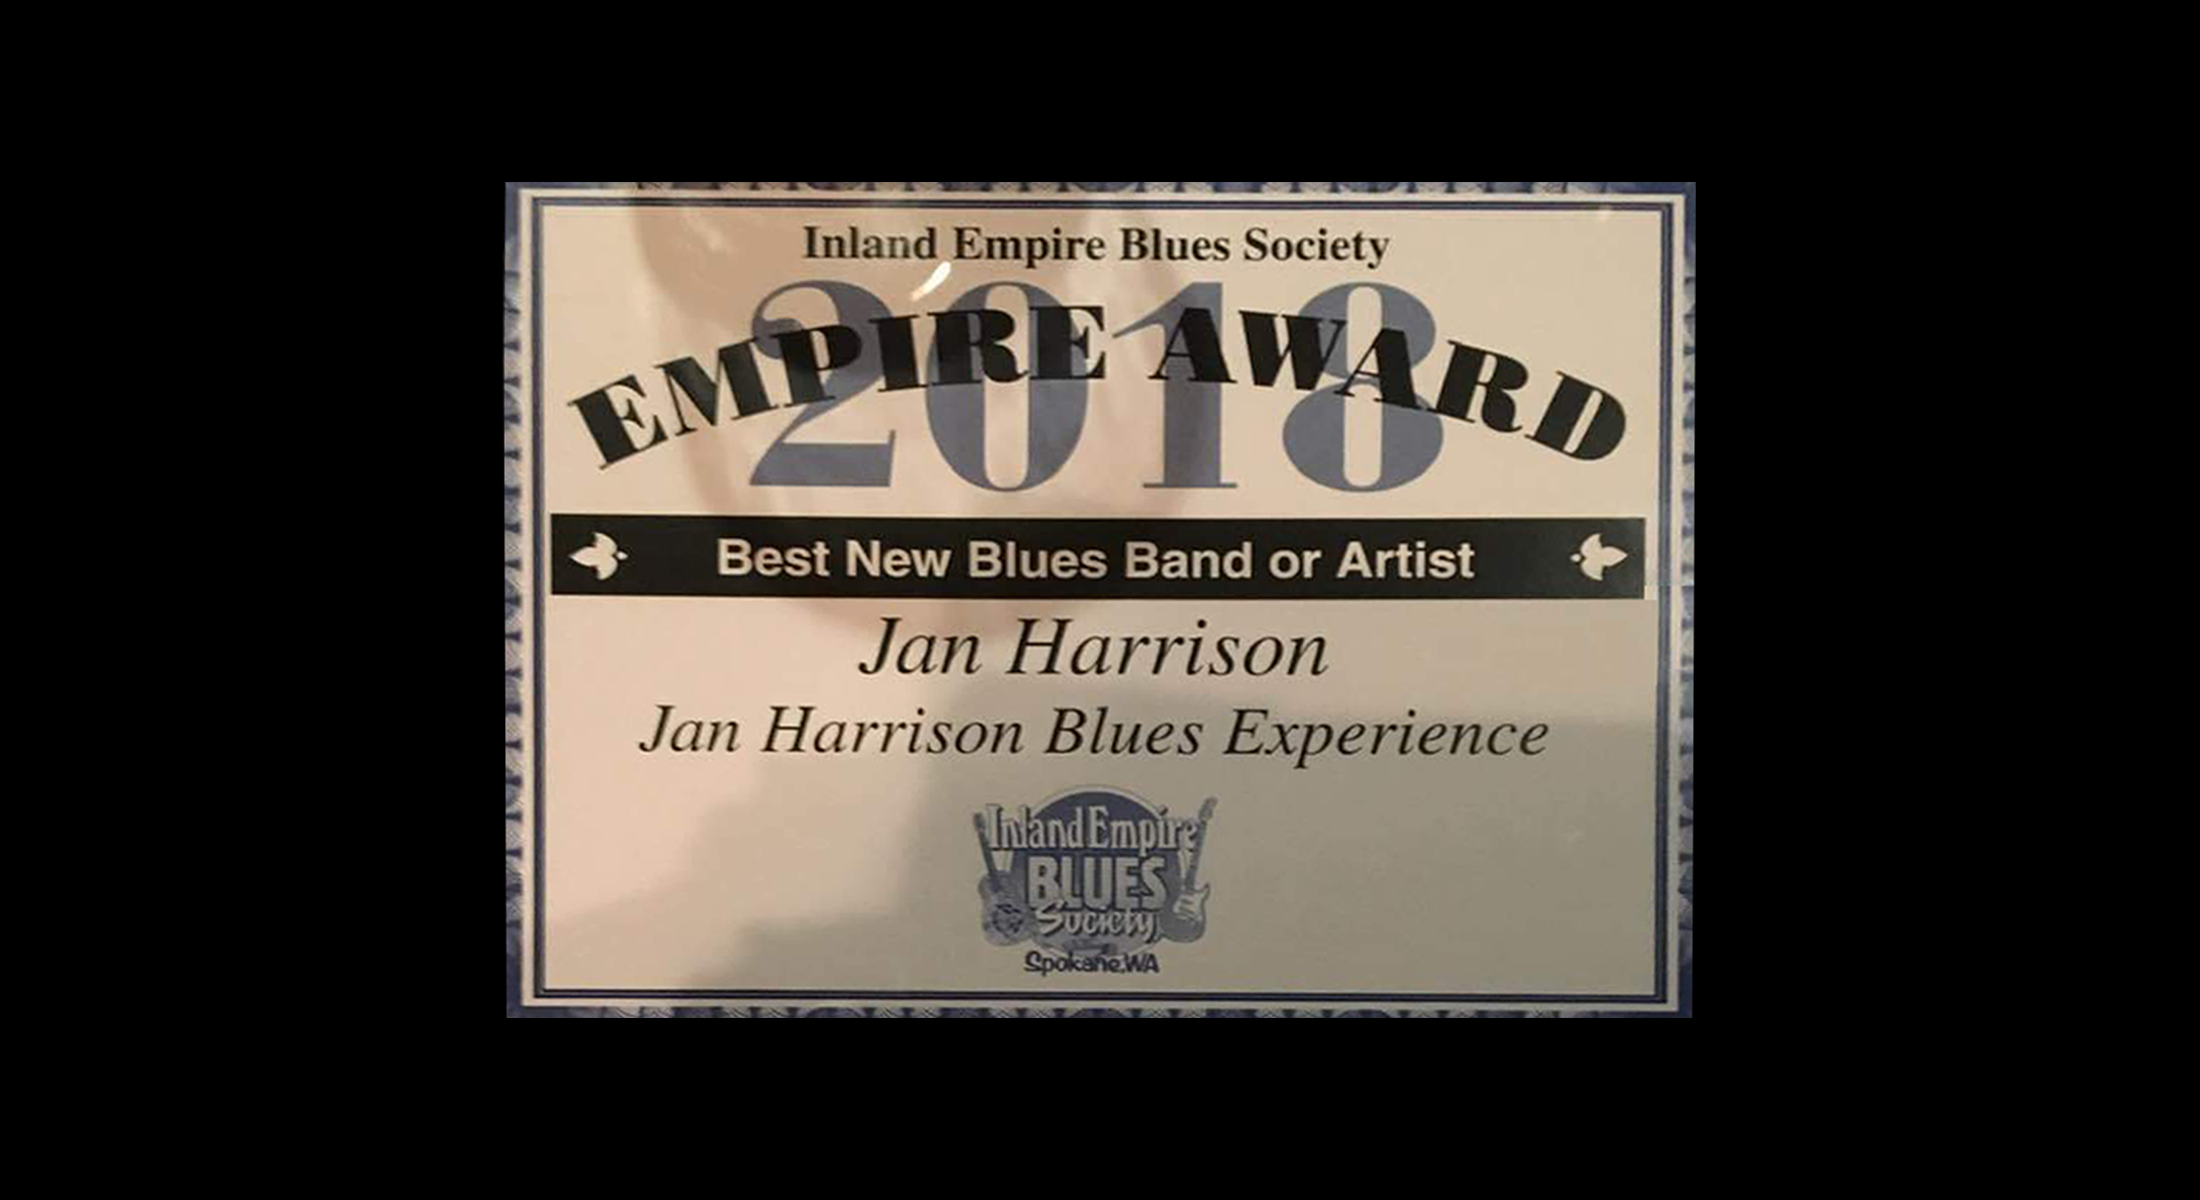 Blues Society Award